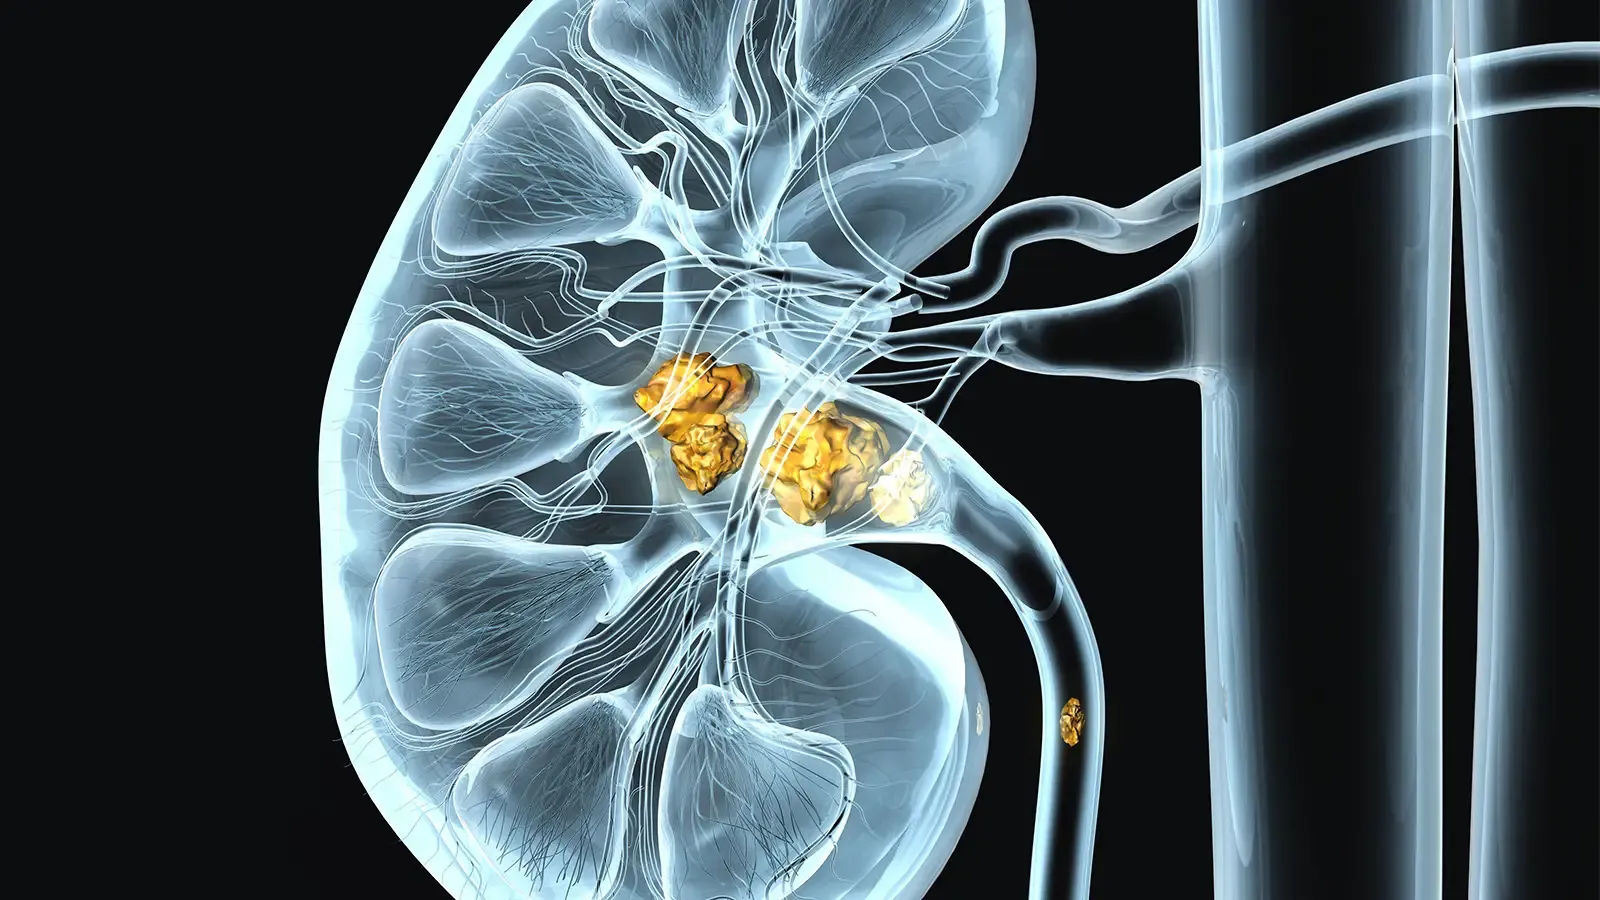 Symptoms of Kidney stones